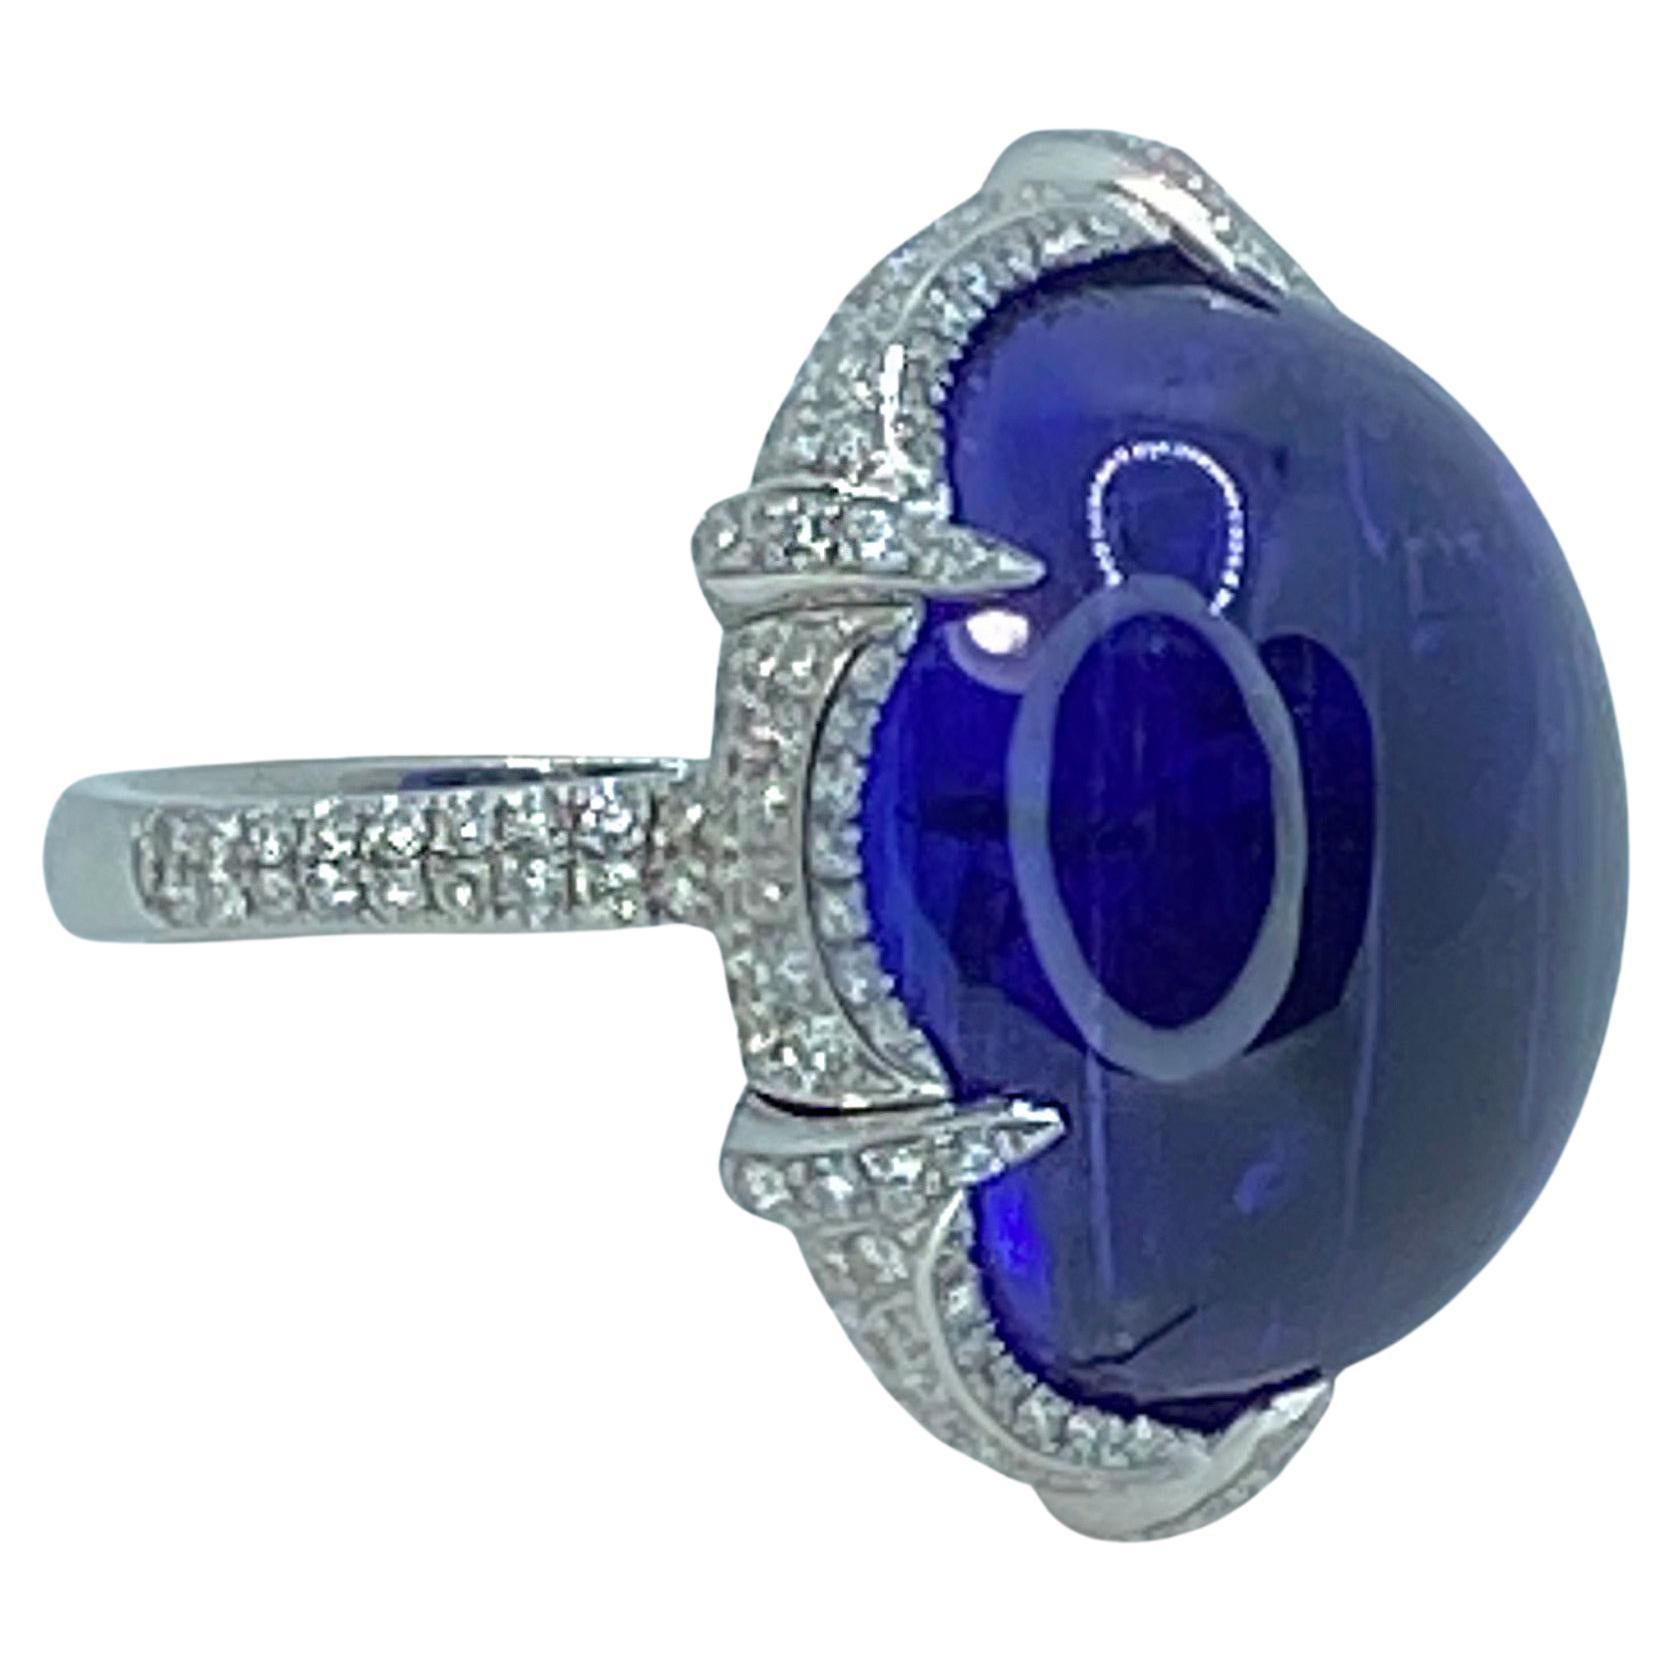 Der Solitär-Cabochon-Ring von S.Georgios ist ein handgefertigter Ring aus 18 Karat Weißgold. Dieser wunderschöne, einzigartige Ring enthält einen Solitär mit einem natürlichen Tansanit im Cabochon-Schliff mit einem Gewicht von 37,7 Karat und